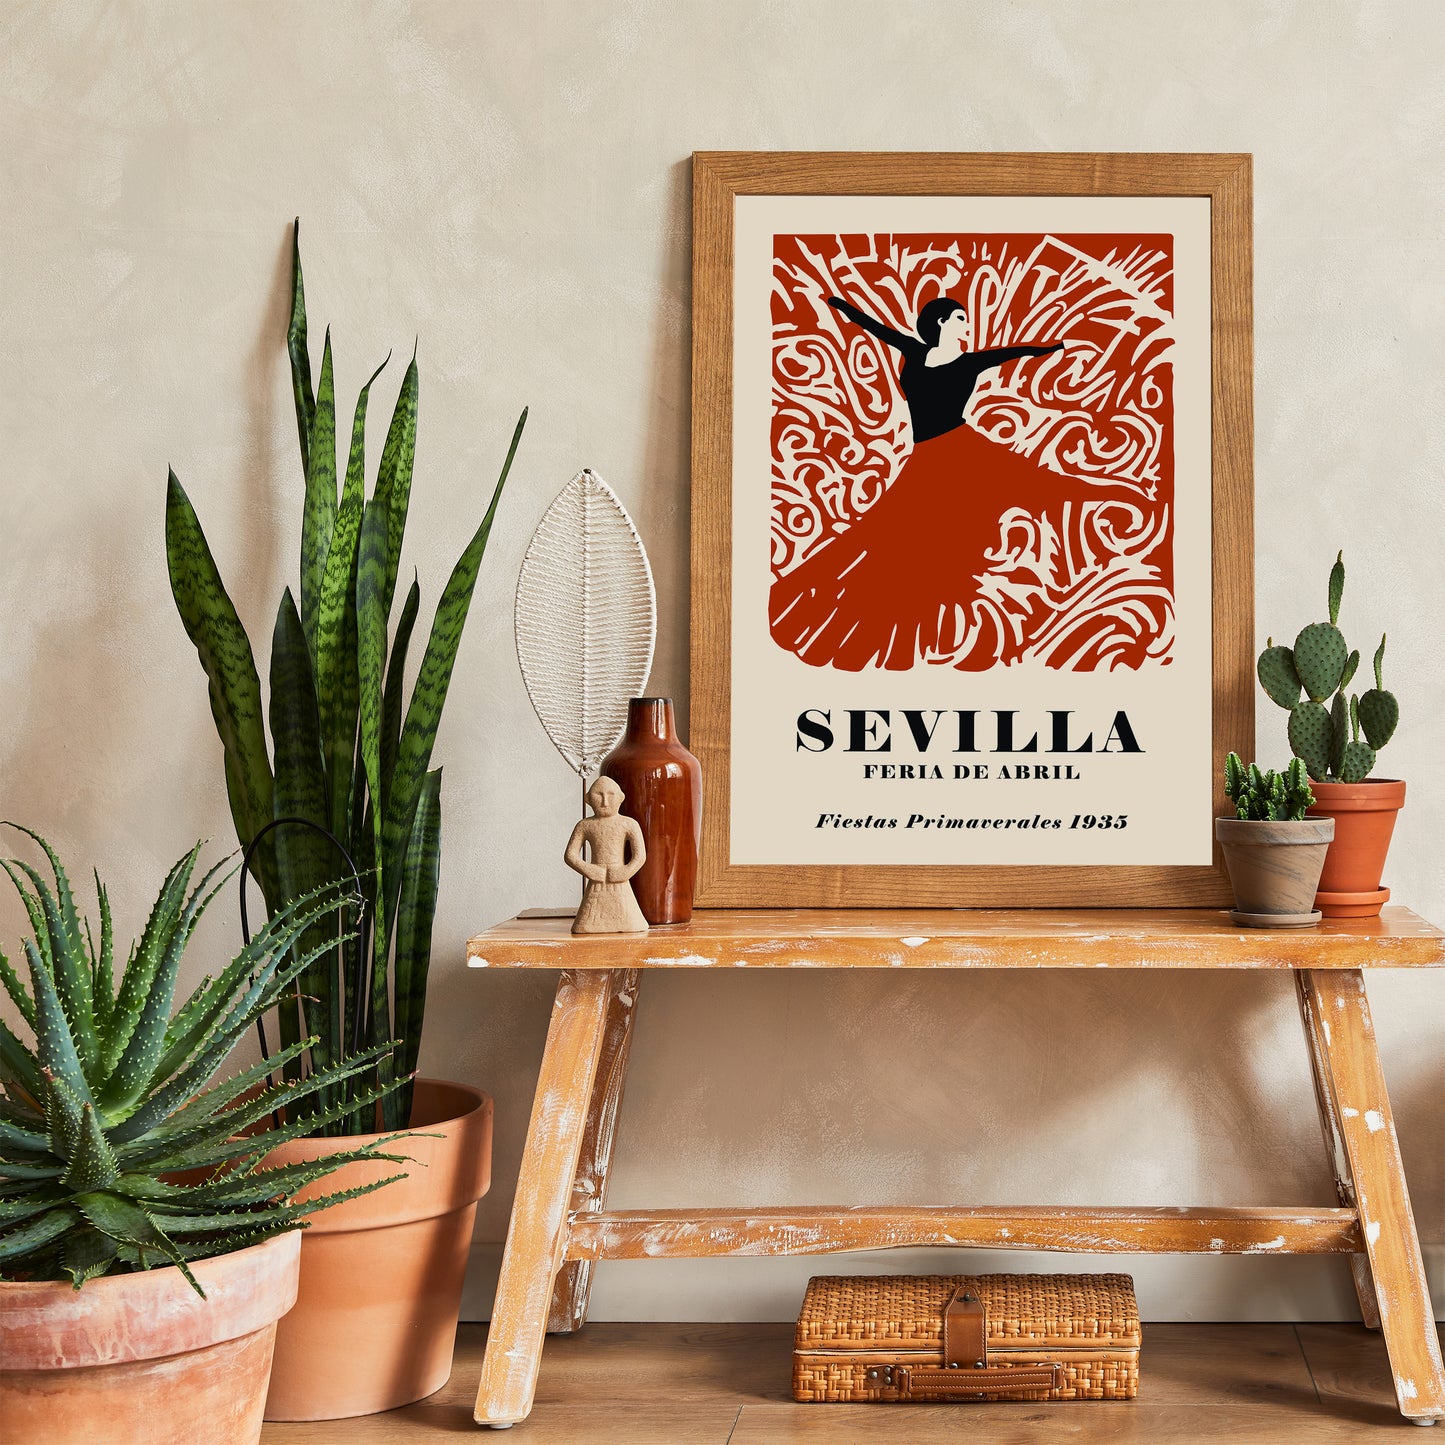 Flamenco Sevilla Festival 1935 Poster